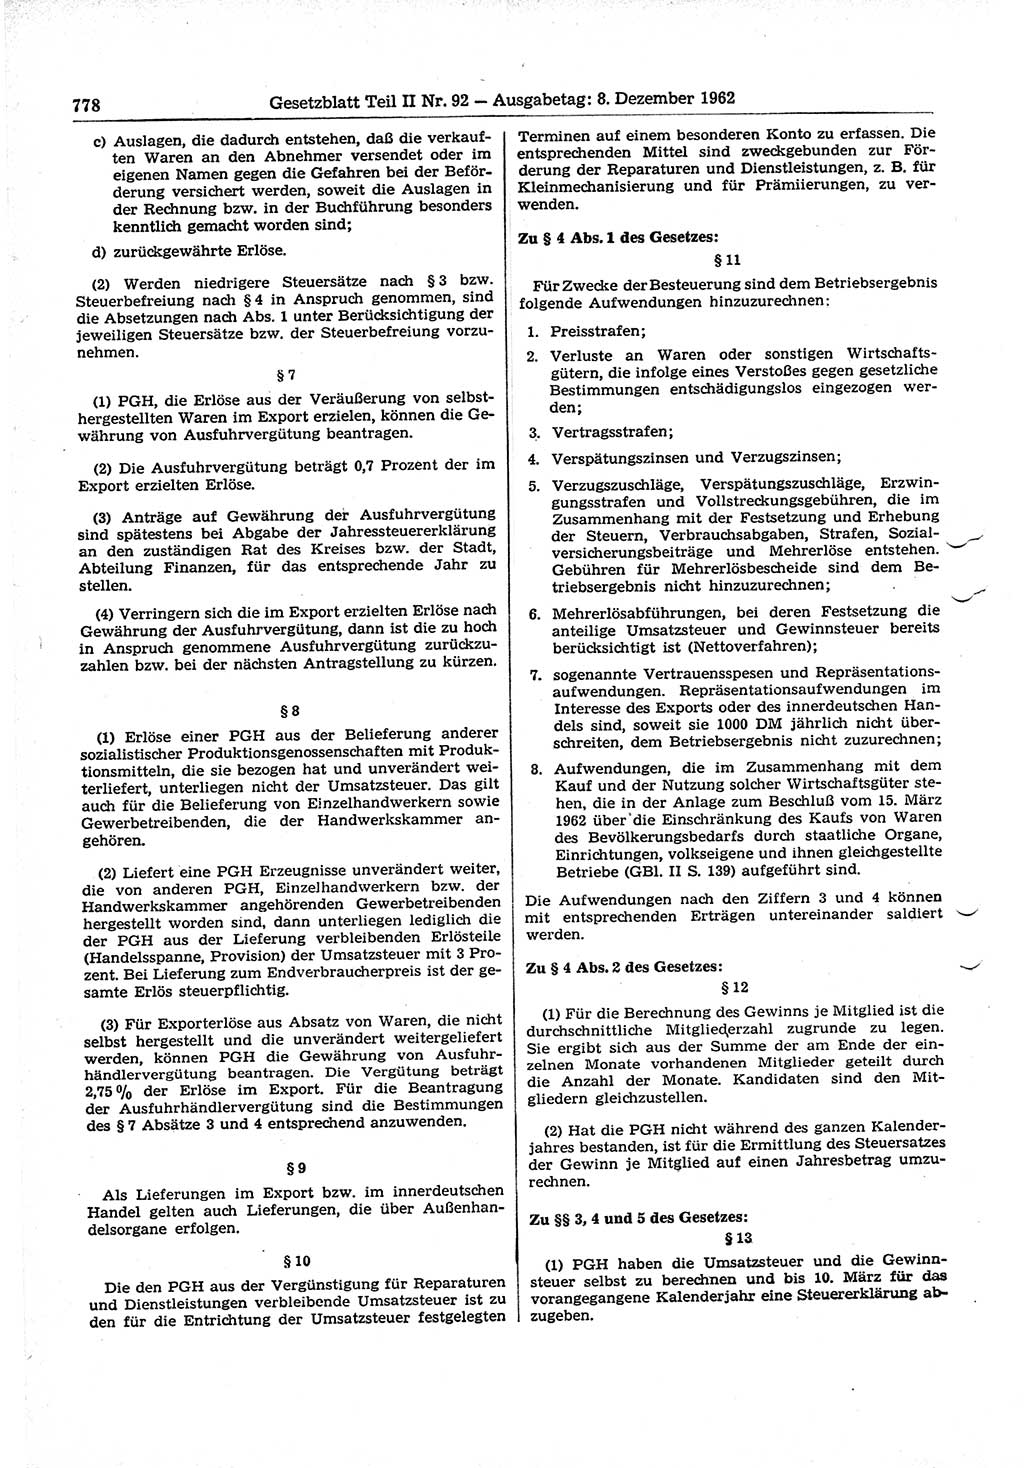 Gesetzblatt (GBl.) der Deutschen Demokratischen Republik (DDR) Teil ⅠⅠ 1962, Seite 778 (GBl. DDR ⅠⅠ 1962, S. 778)